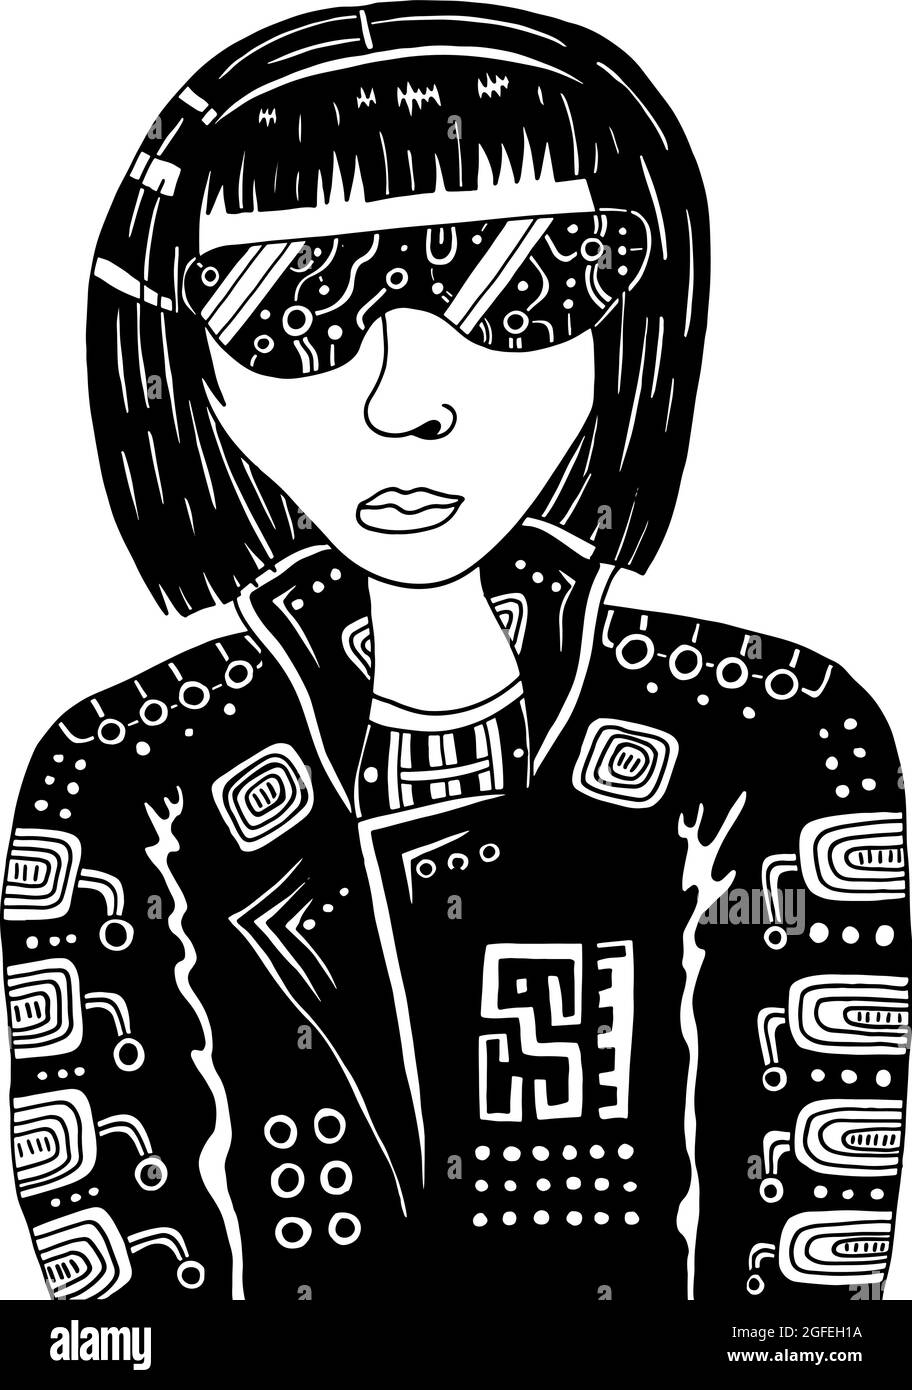 Cyberpunk Mädchen in dunkel vr Brille. Cybergoth-Illustration.  Schwarz-weiße Punk-Frau. RetroWave- und Vaporwave-Style. Vektorgrafiken  Stock-Vektorgrafik - Alamy